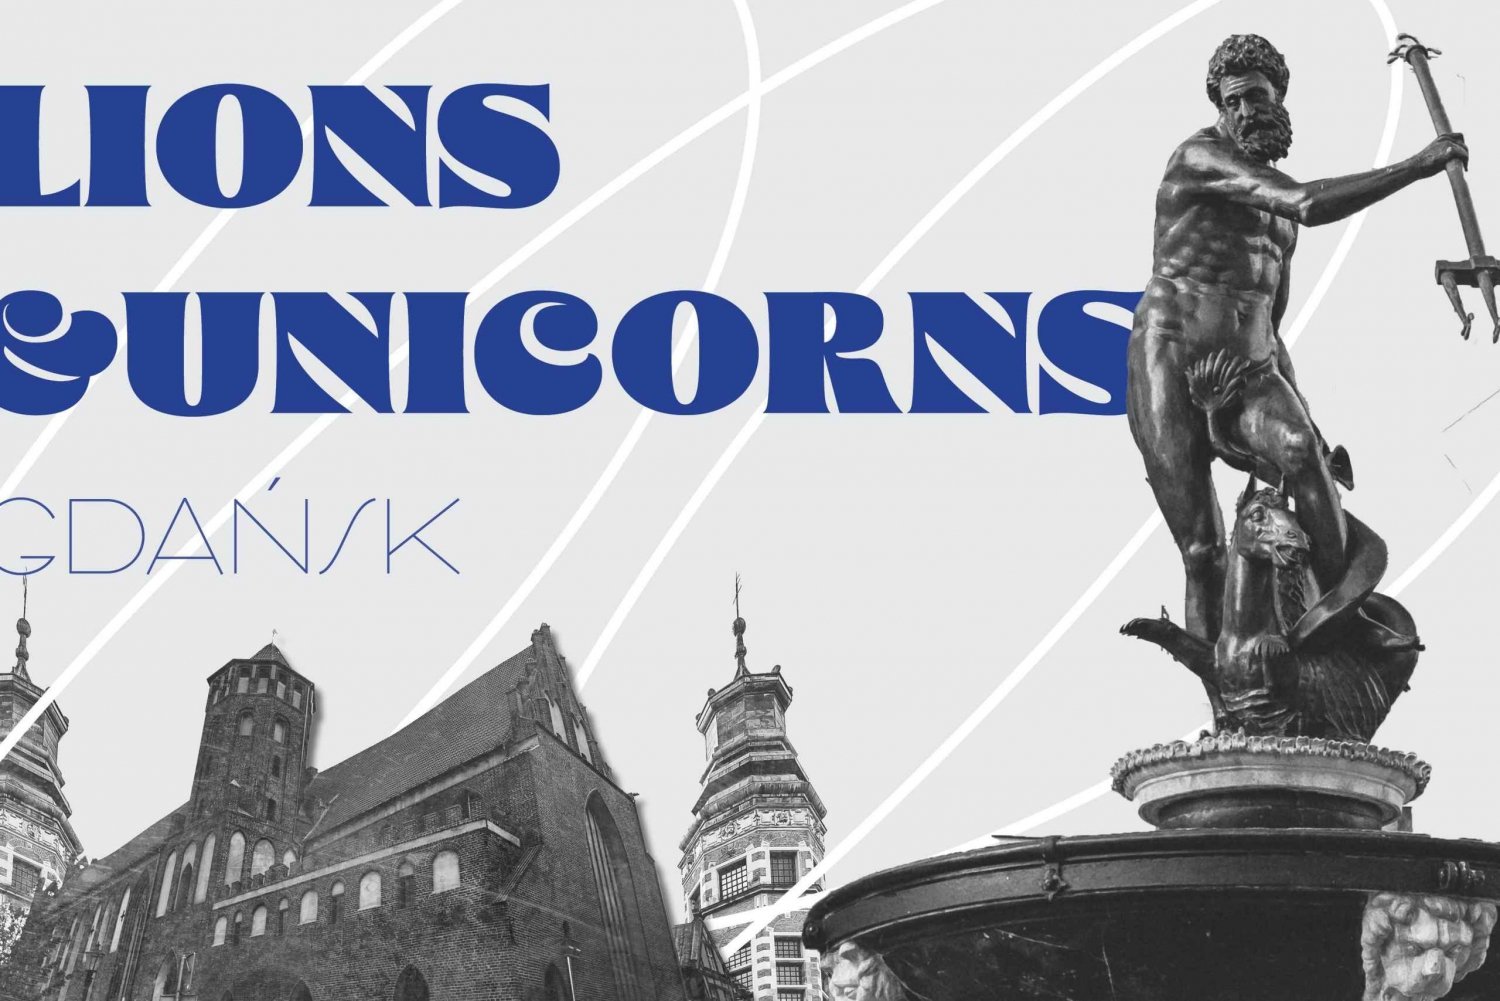 Jeu d'évasion fantastique en plein air à Gdansk : Lions et licornes